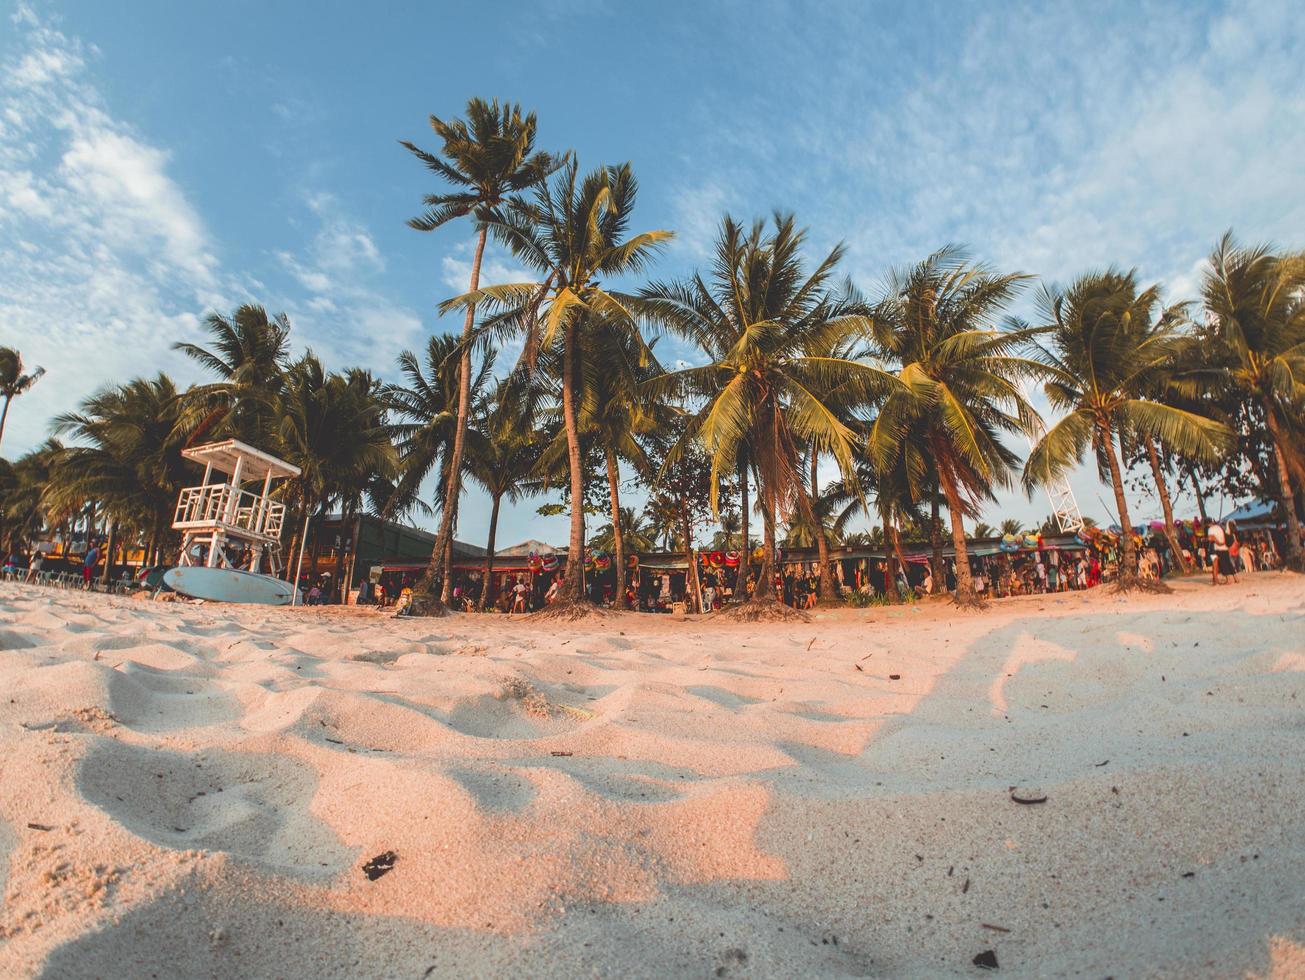 Filipinas, 2018-turistas se alinean en el distrito comercial de la playa foto